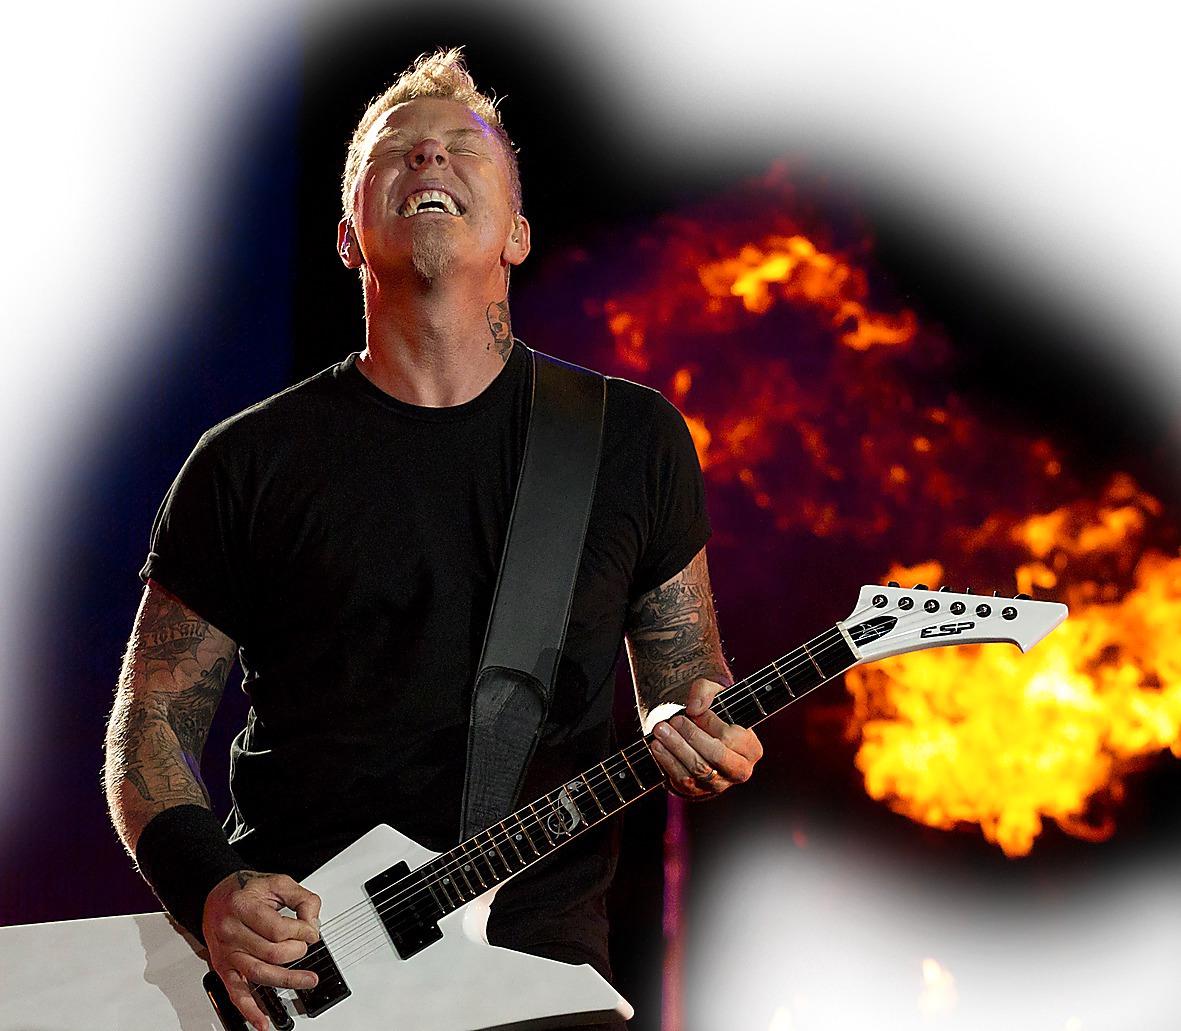 UTBRÄND Boken om Metallica är ett hårdrockshaveri, skriver Christoffer Röstlund Jonsson.
Foto: AP